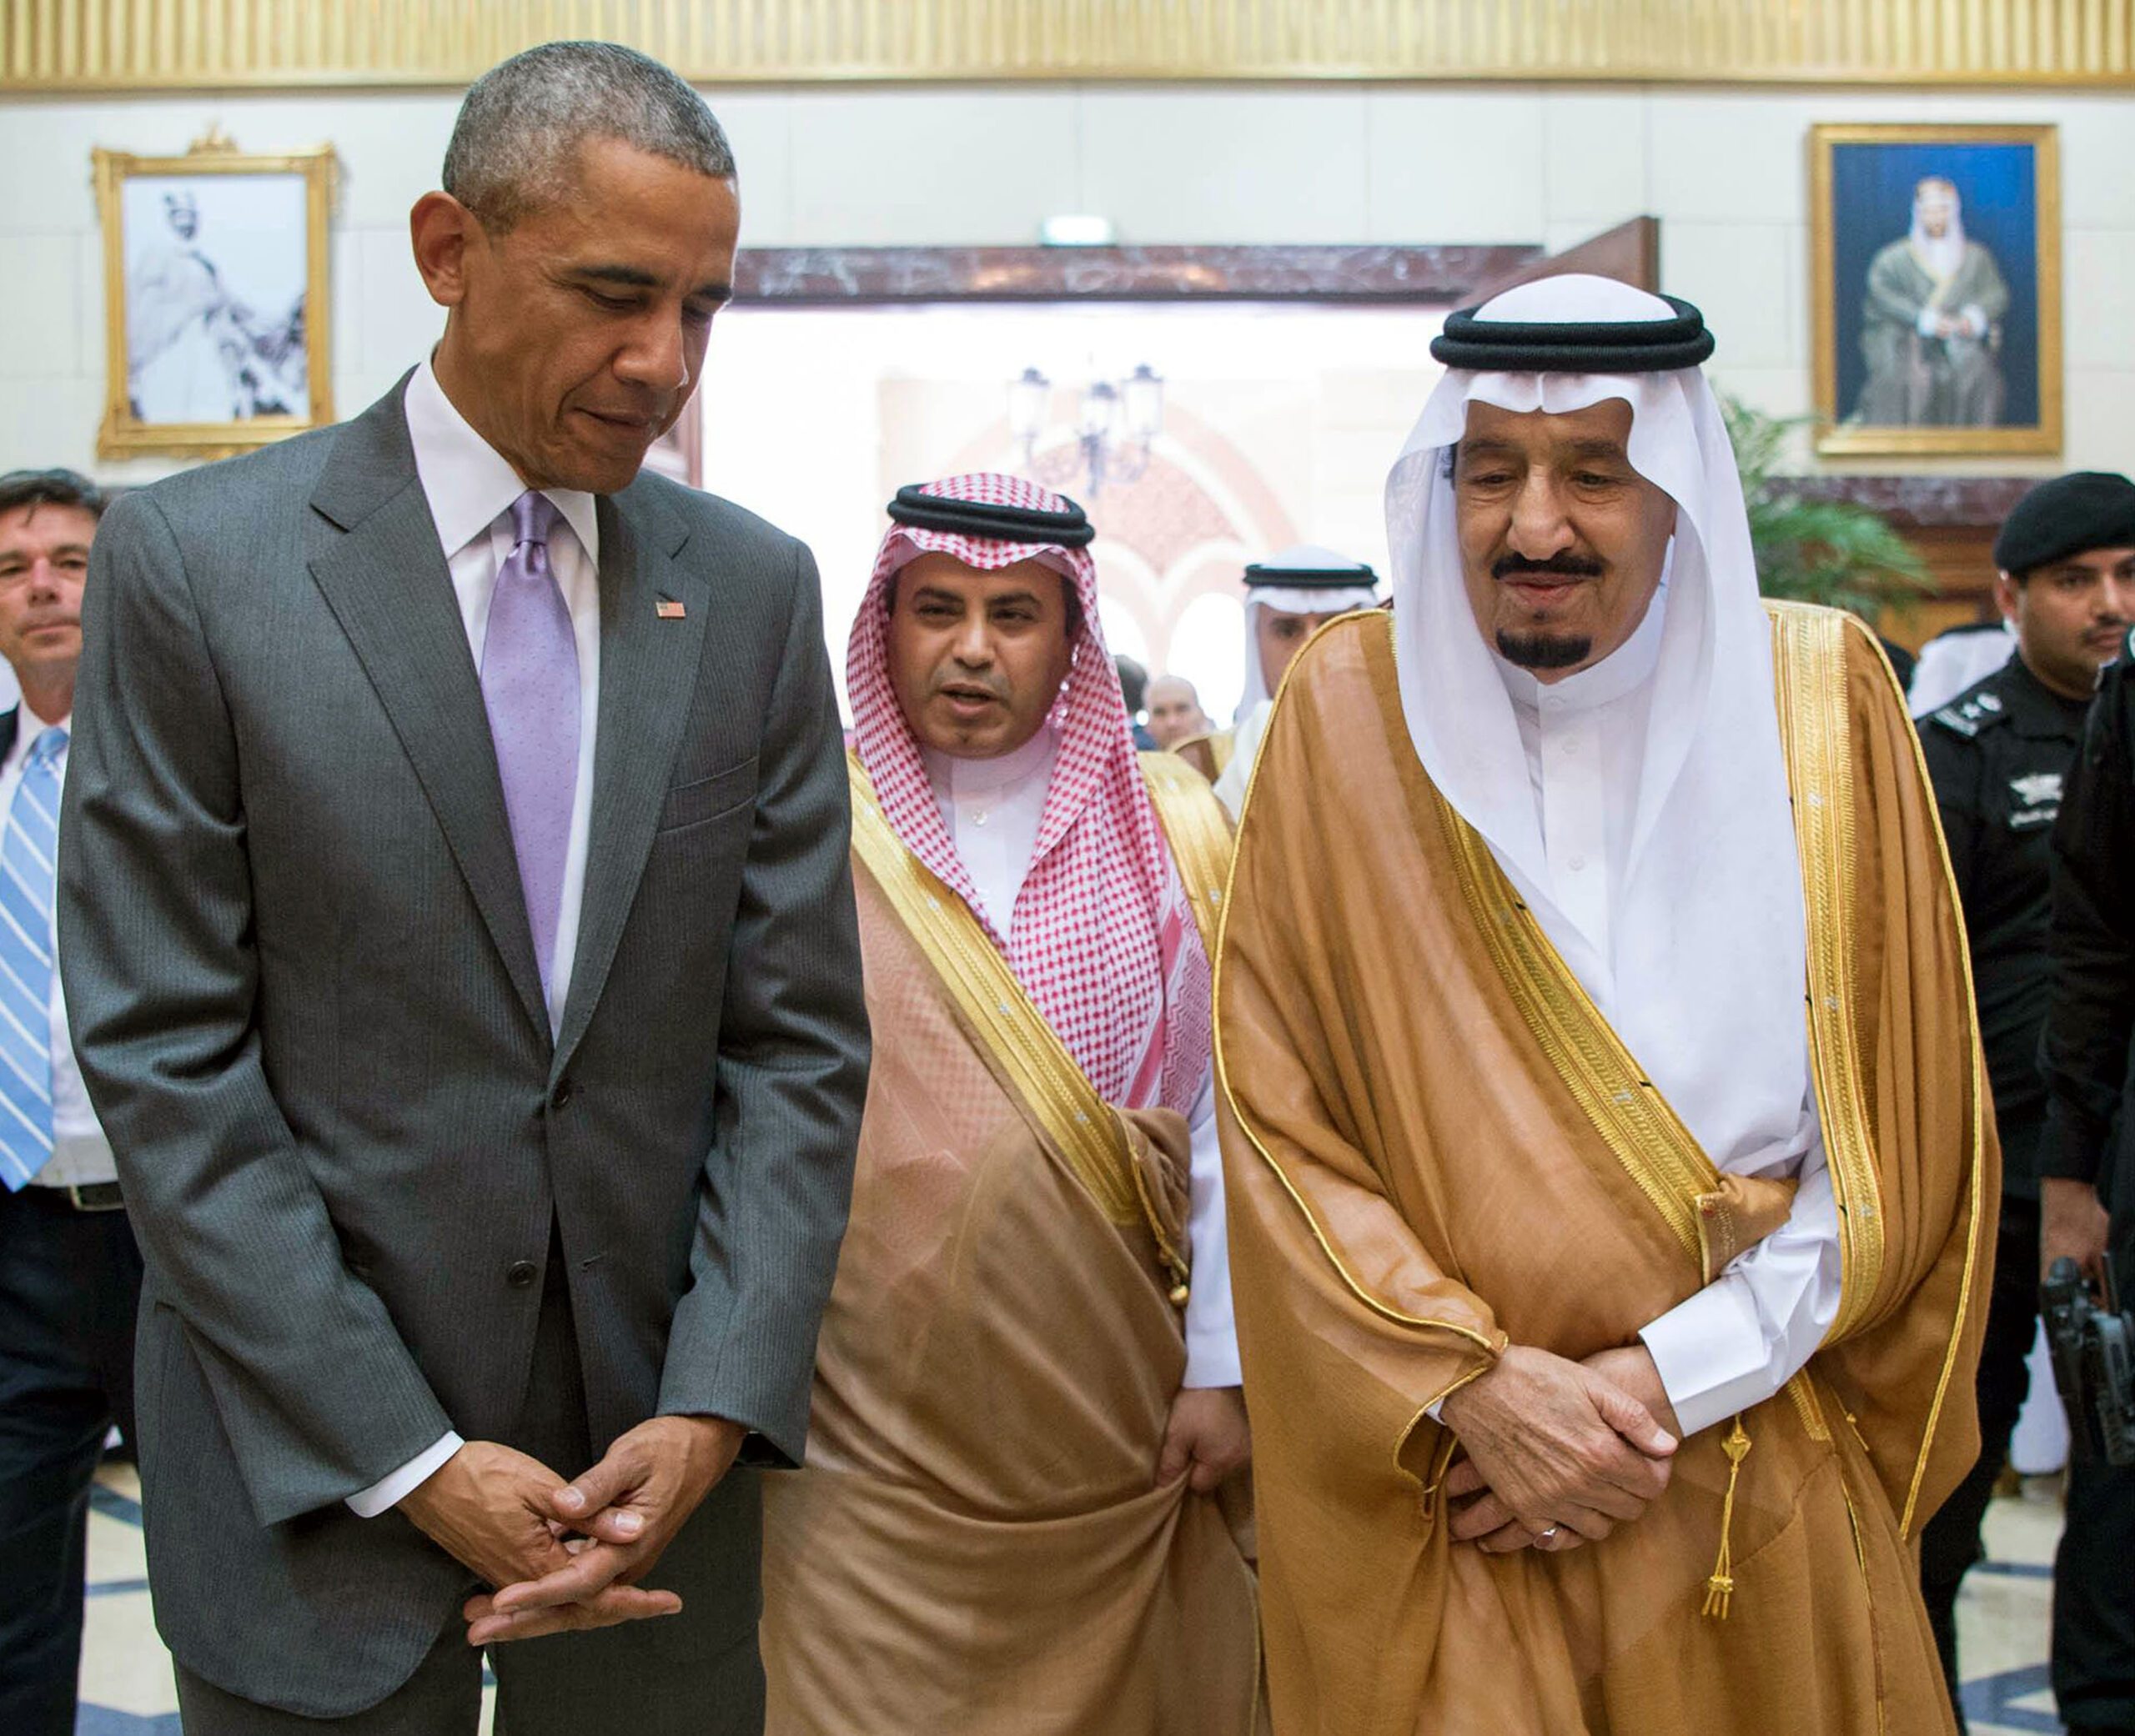 Obama in Saudi Arabia on fence-mending visit